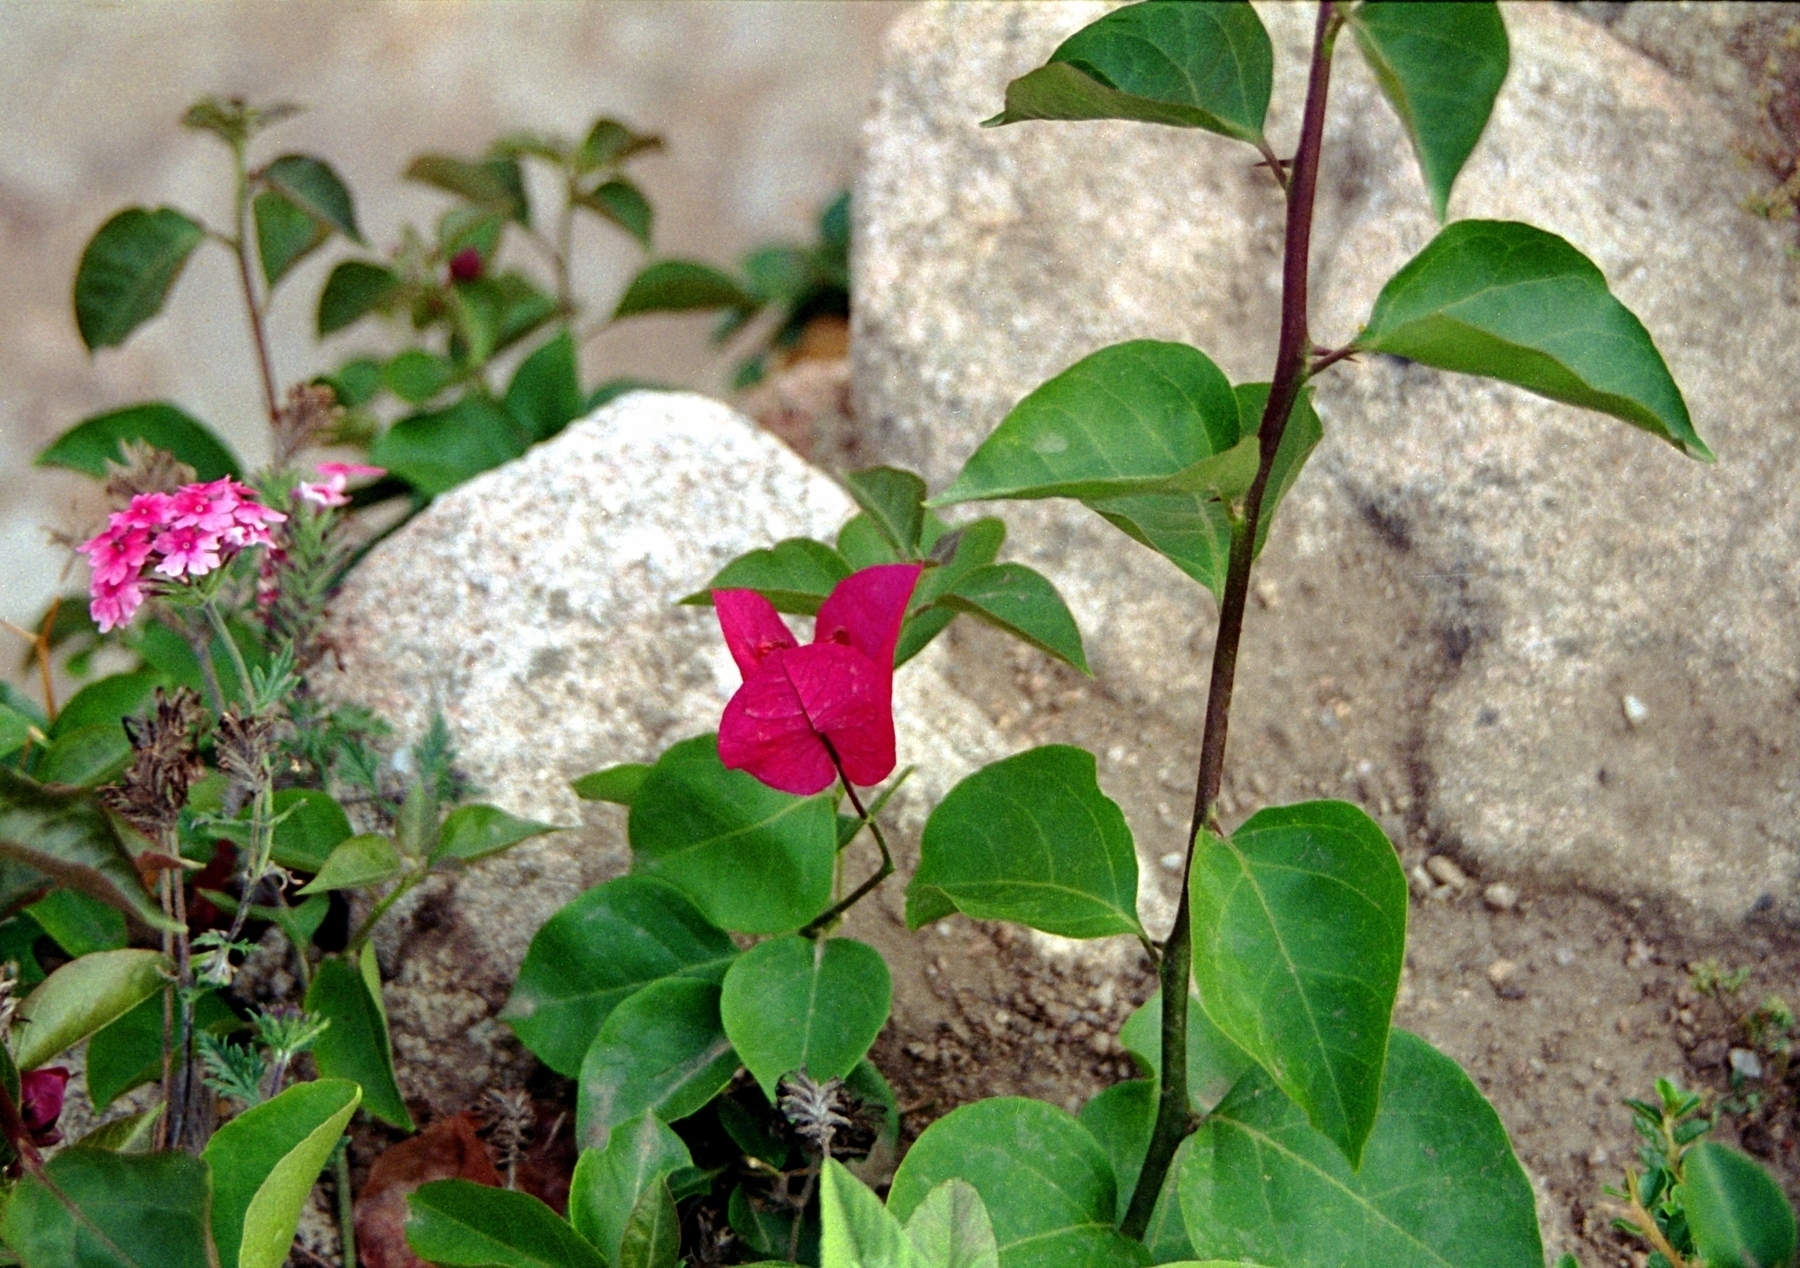 A flower in a Sardinian villa garden